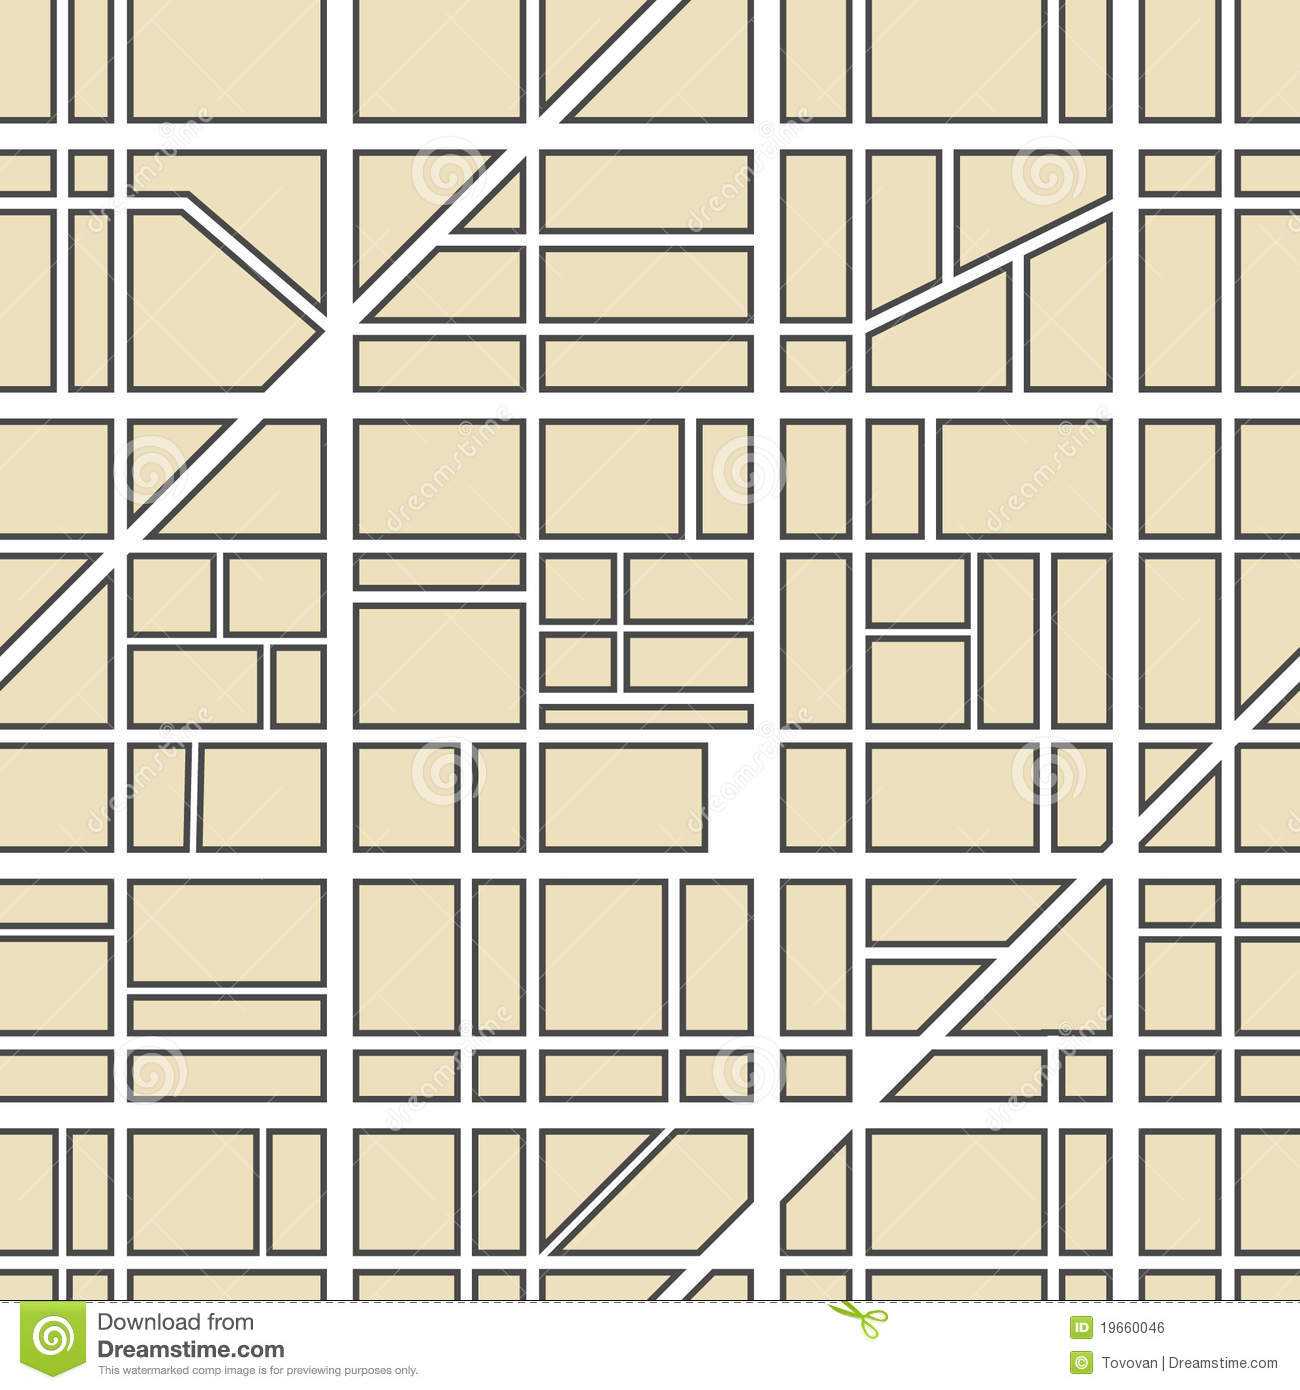 Blank Street Map Template. Blank Street Map Template Draw A Within Blank City Map Template